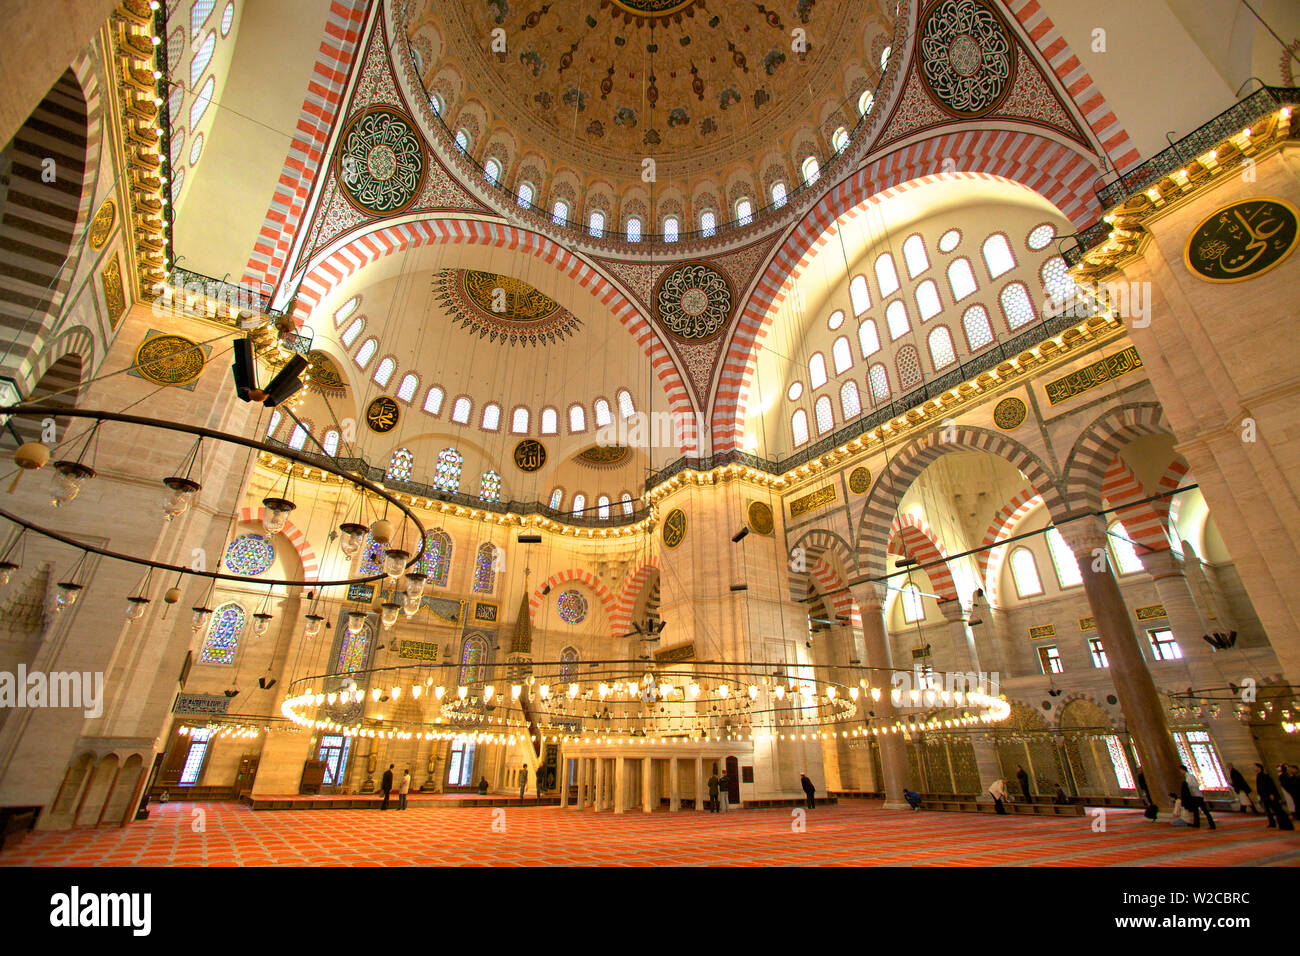 Intérieur de la mosquée Suleymaniye, Istanbul, Turquie Banque D'Images